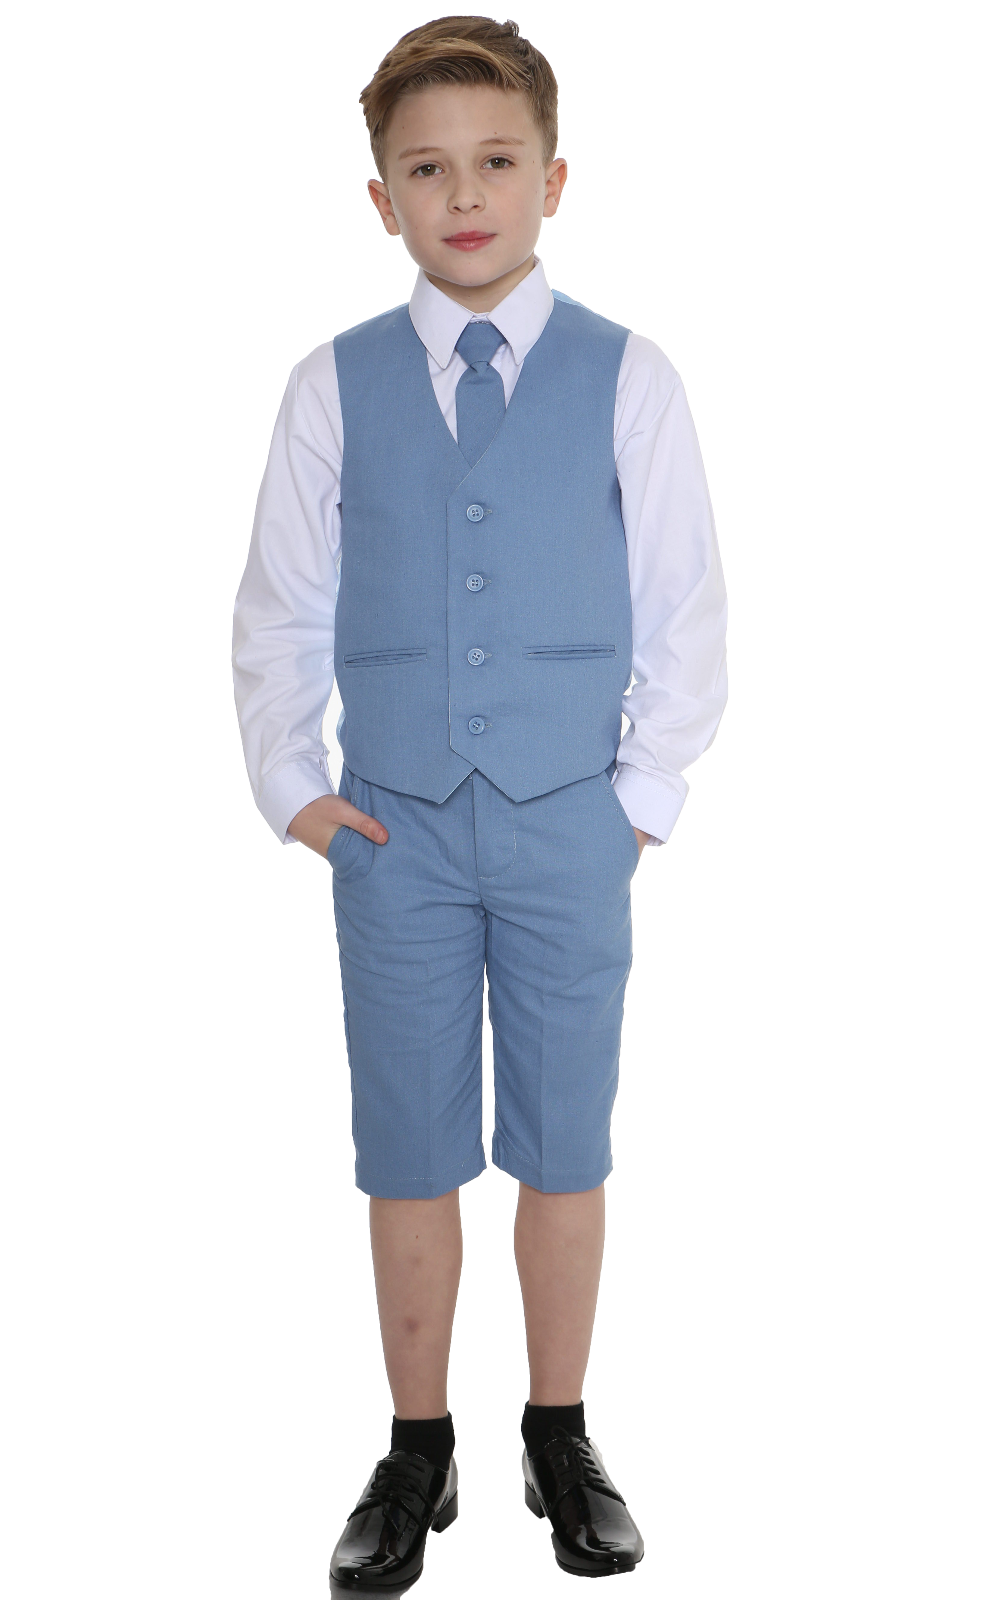 Boys 4 Piece Blue Linen short set – Occasionwear for Kids